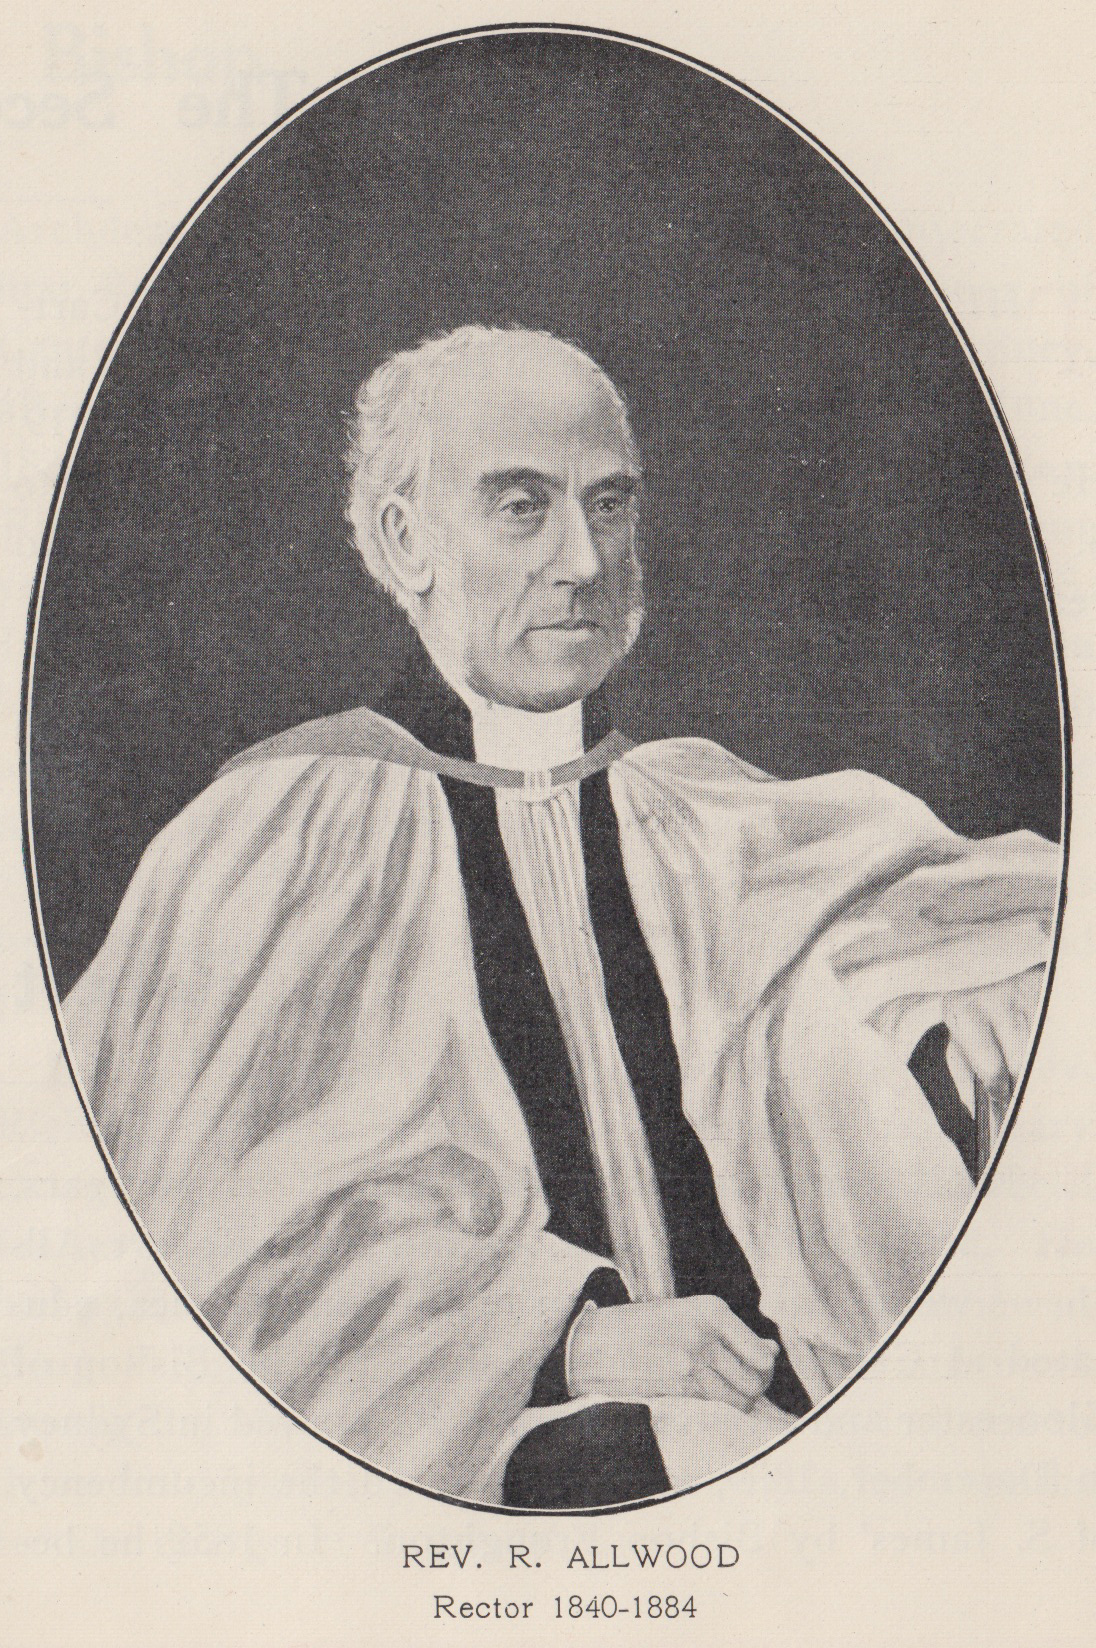 Historical illustration of Reverend Robert Allwood of St James' Chruch, Sydney